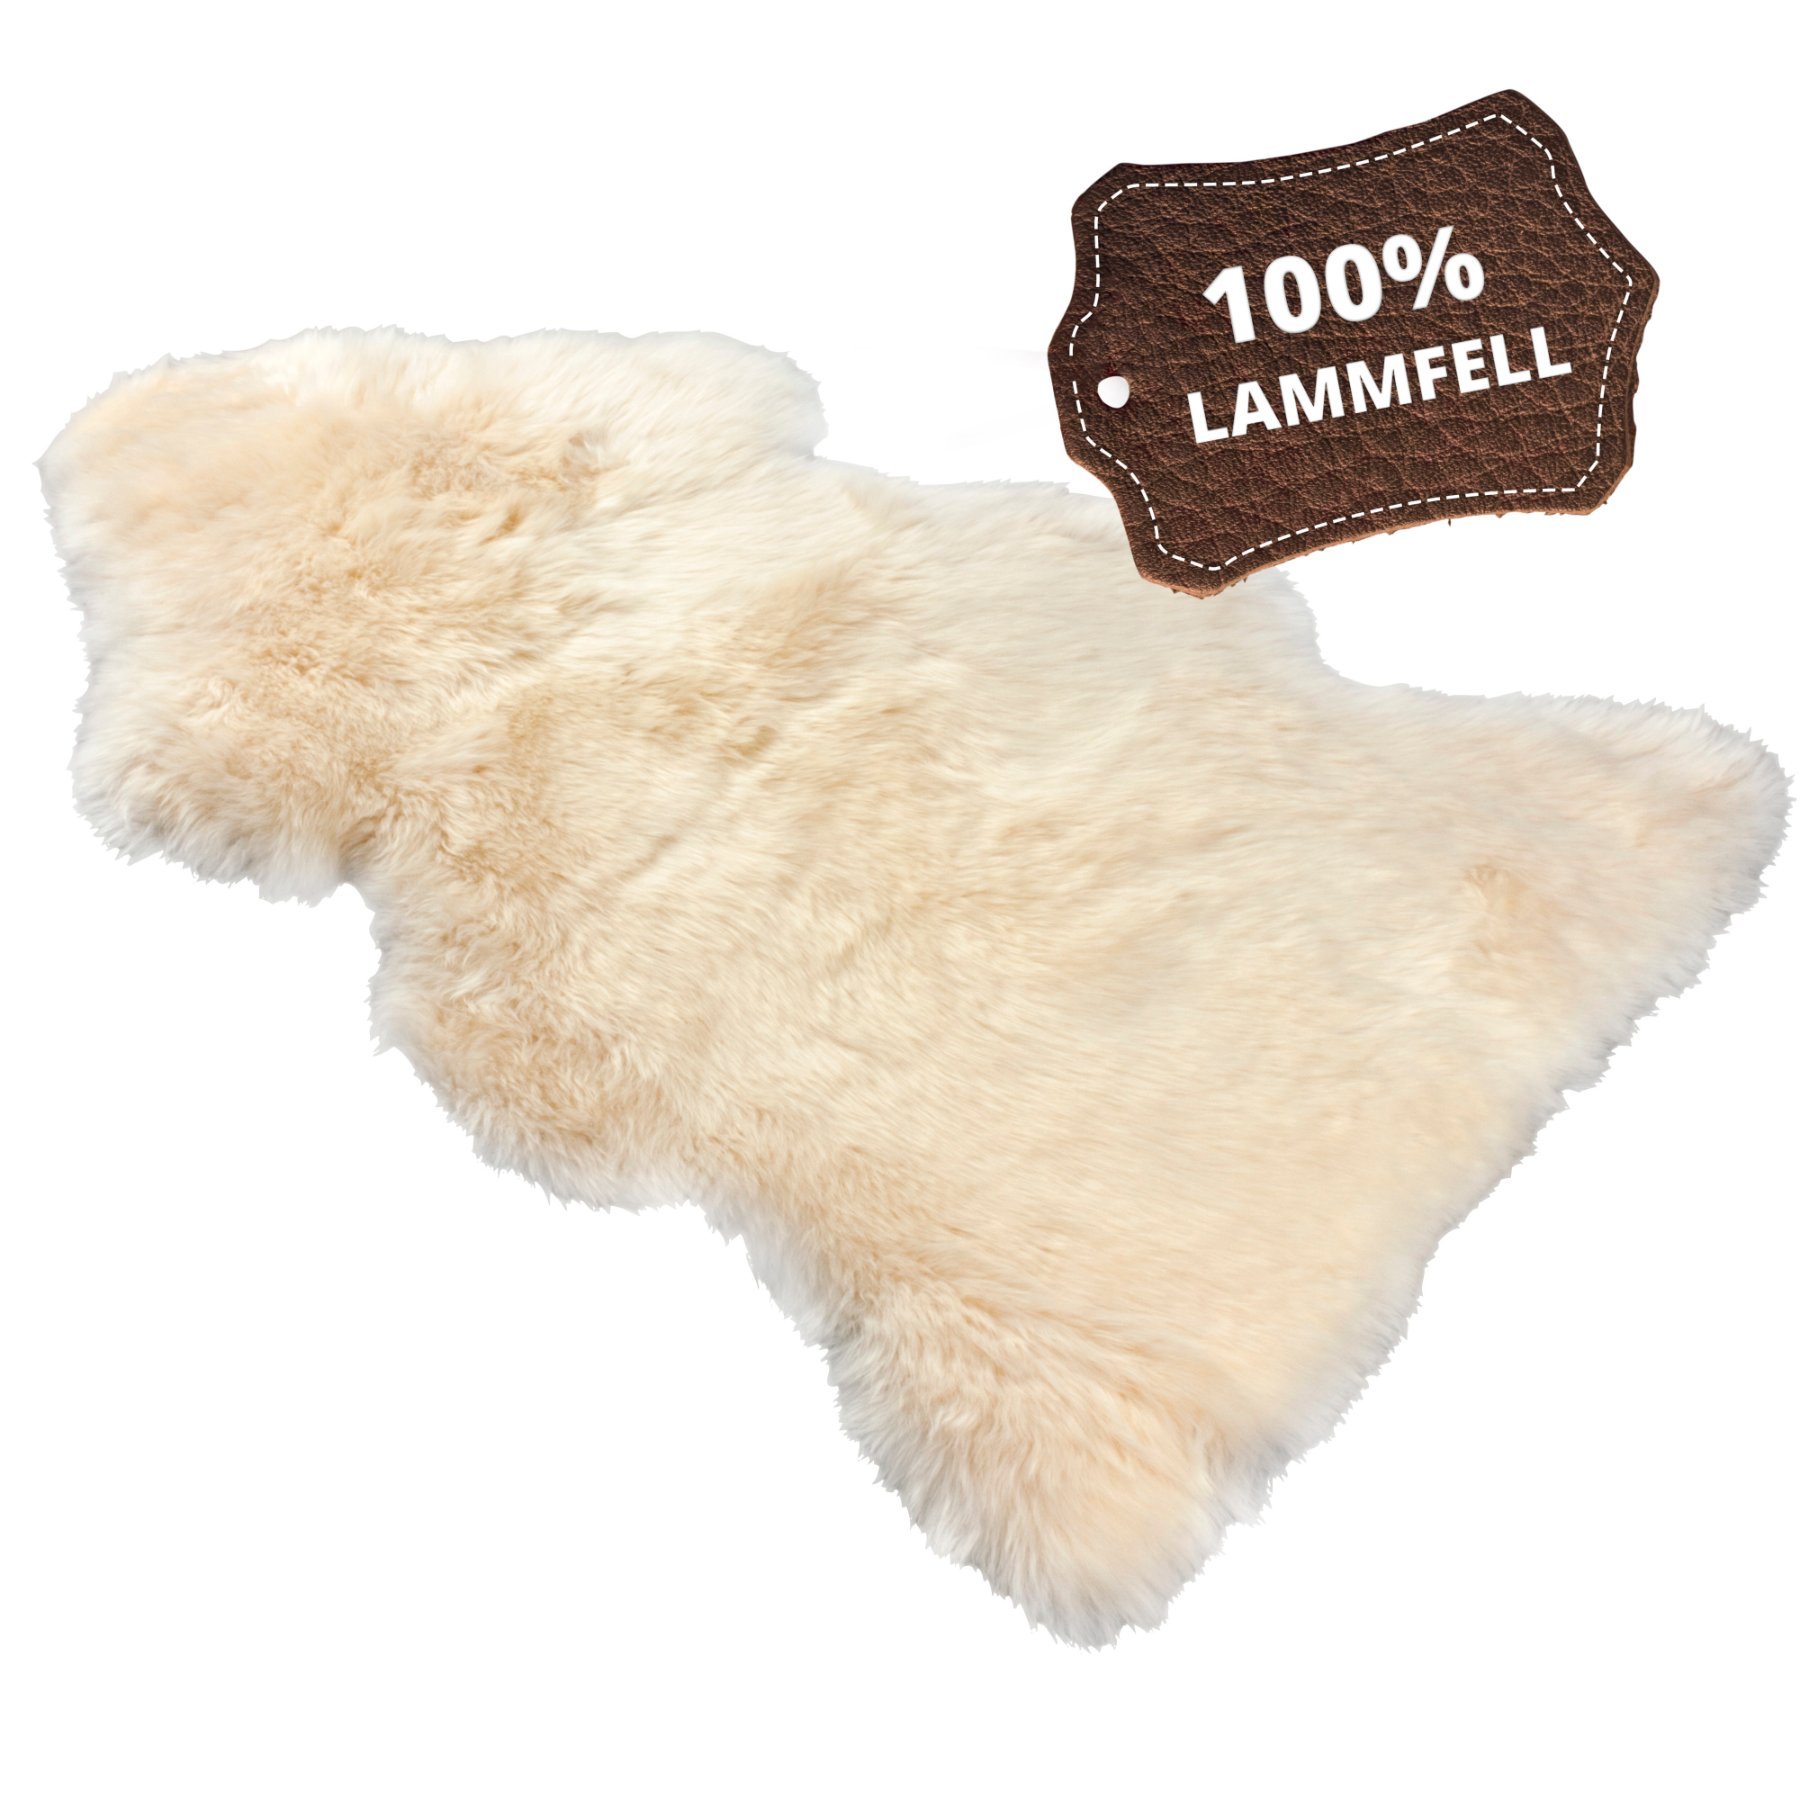 Lammfell Teppich Beal beige 100-105cm aus 100% natürlichem Lammfell, Wollhöhe 50mm, ideal im Wohn- & Schlafzimmer